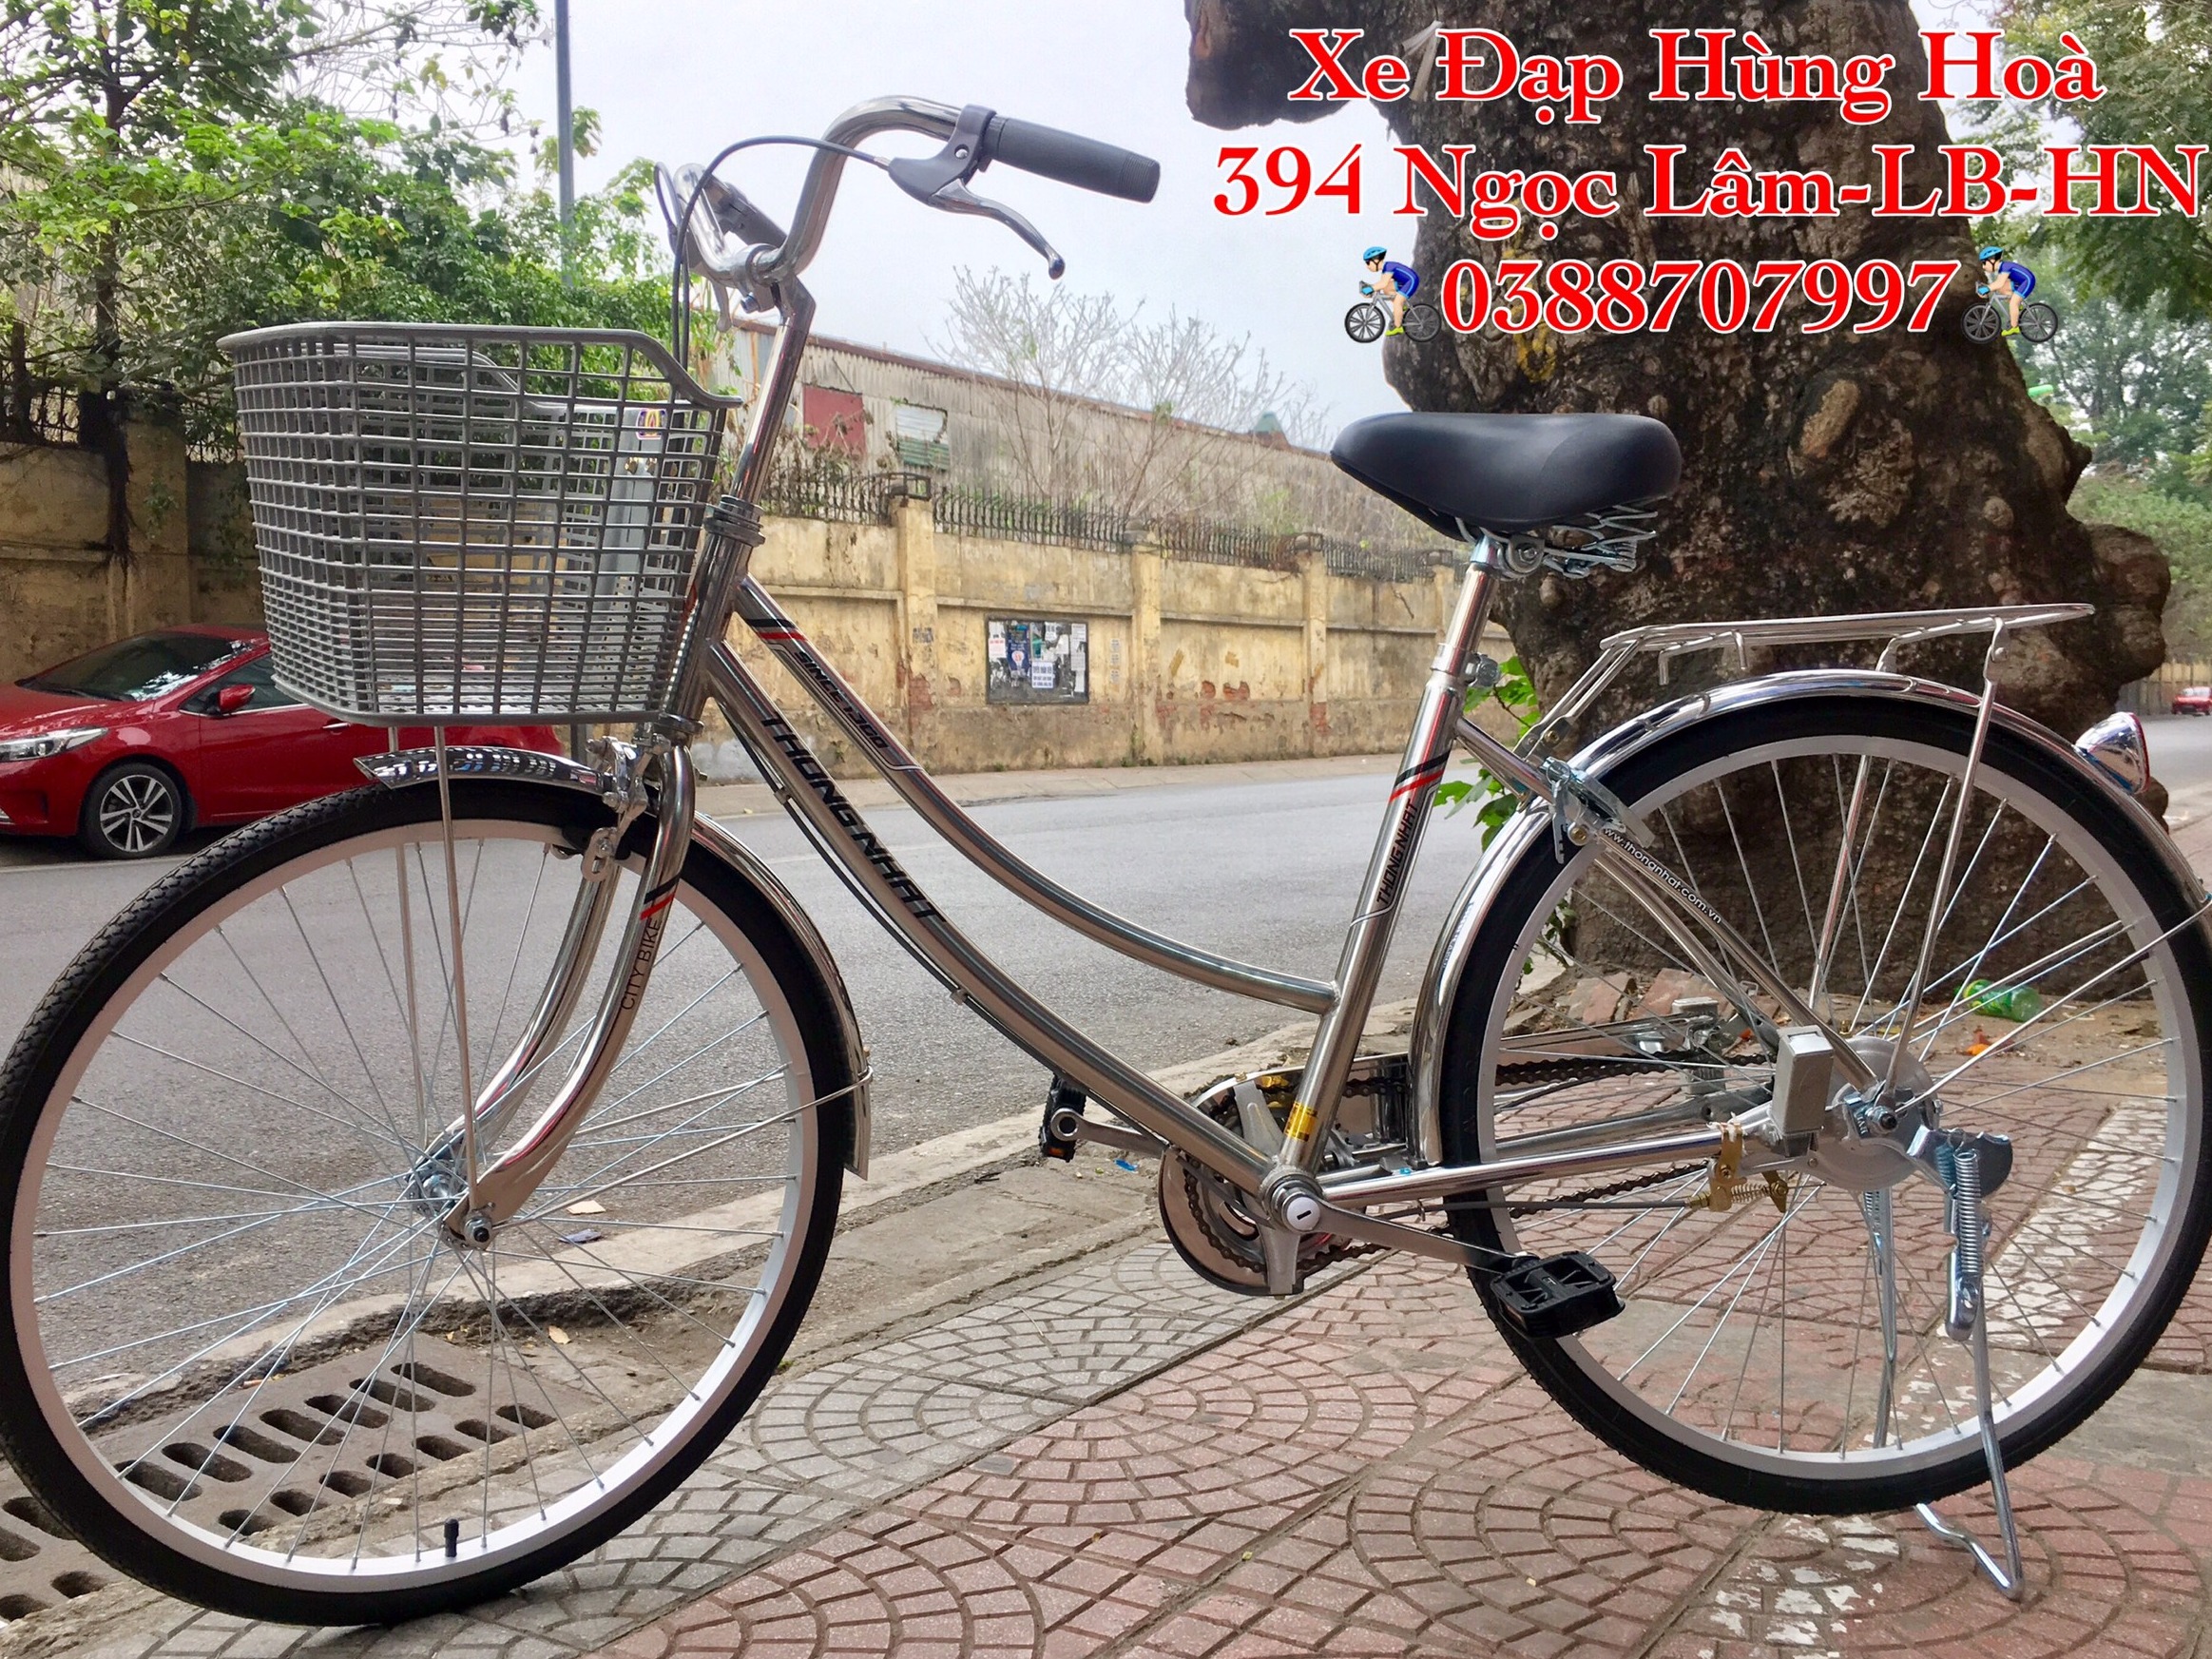 Xe đạp Việt Nhật bền đẹp sang trọng  xe đạp mini Việt Nhật size 2426   Hàng chất lượng cao  Shopee Việt Nam